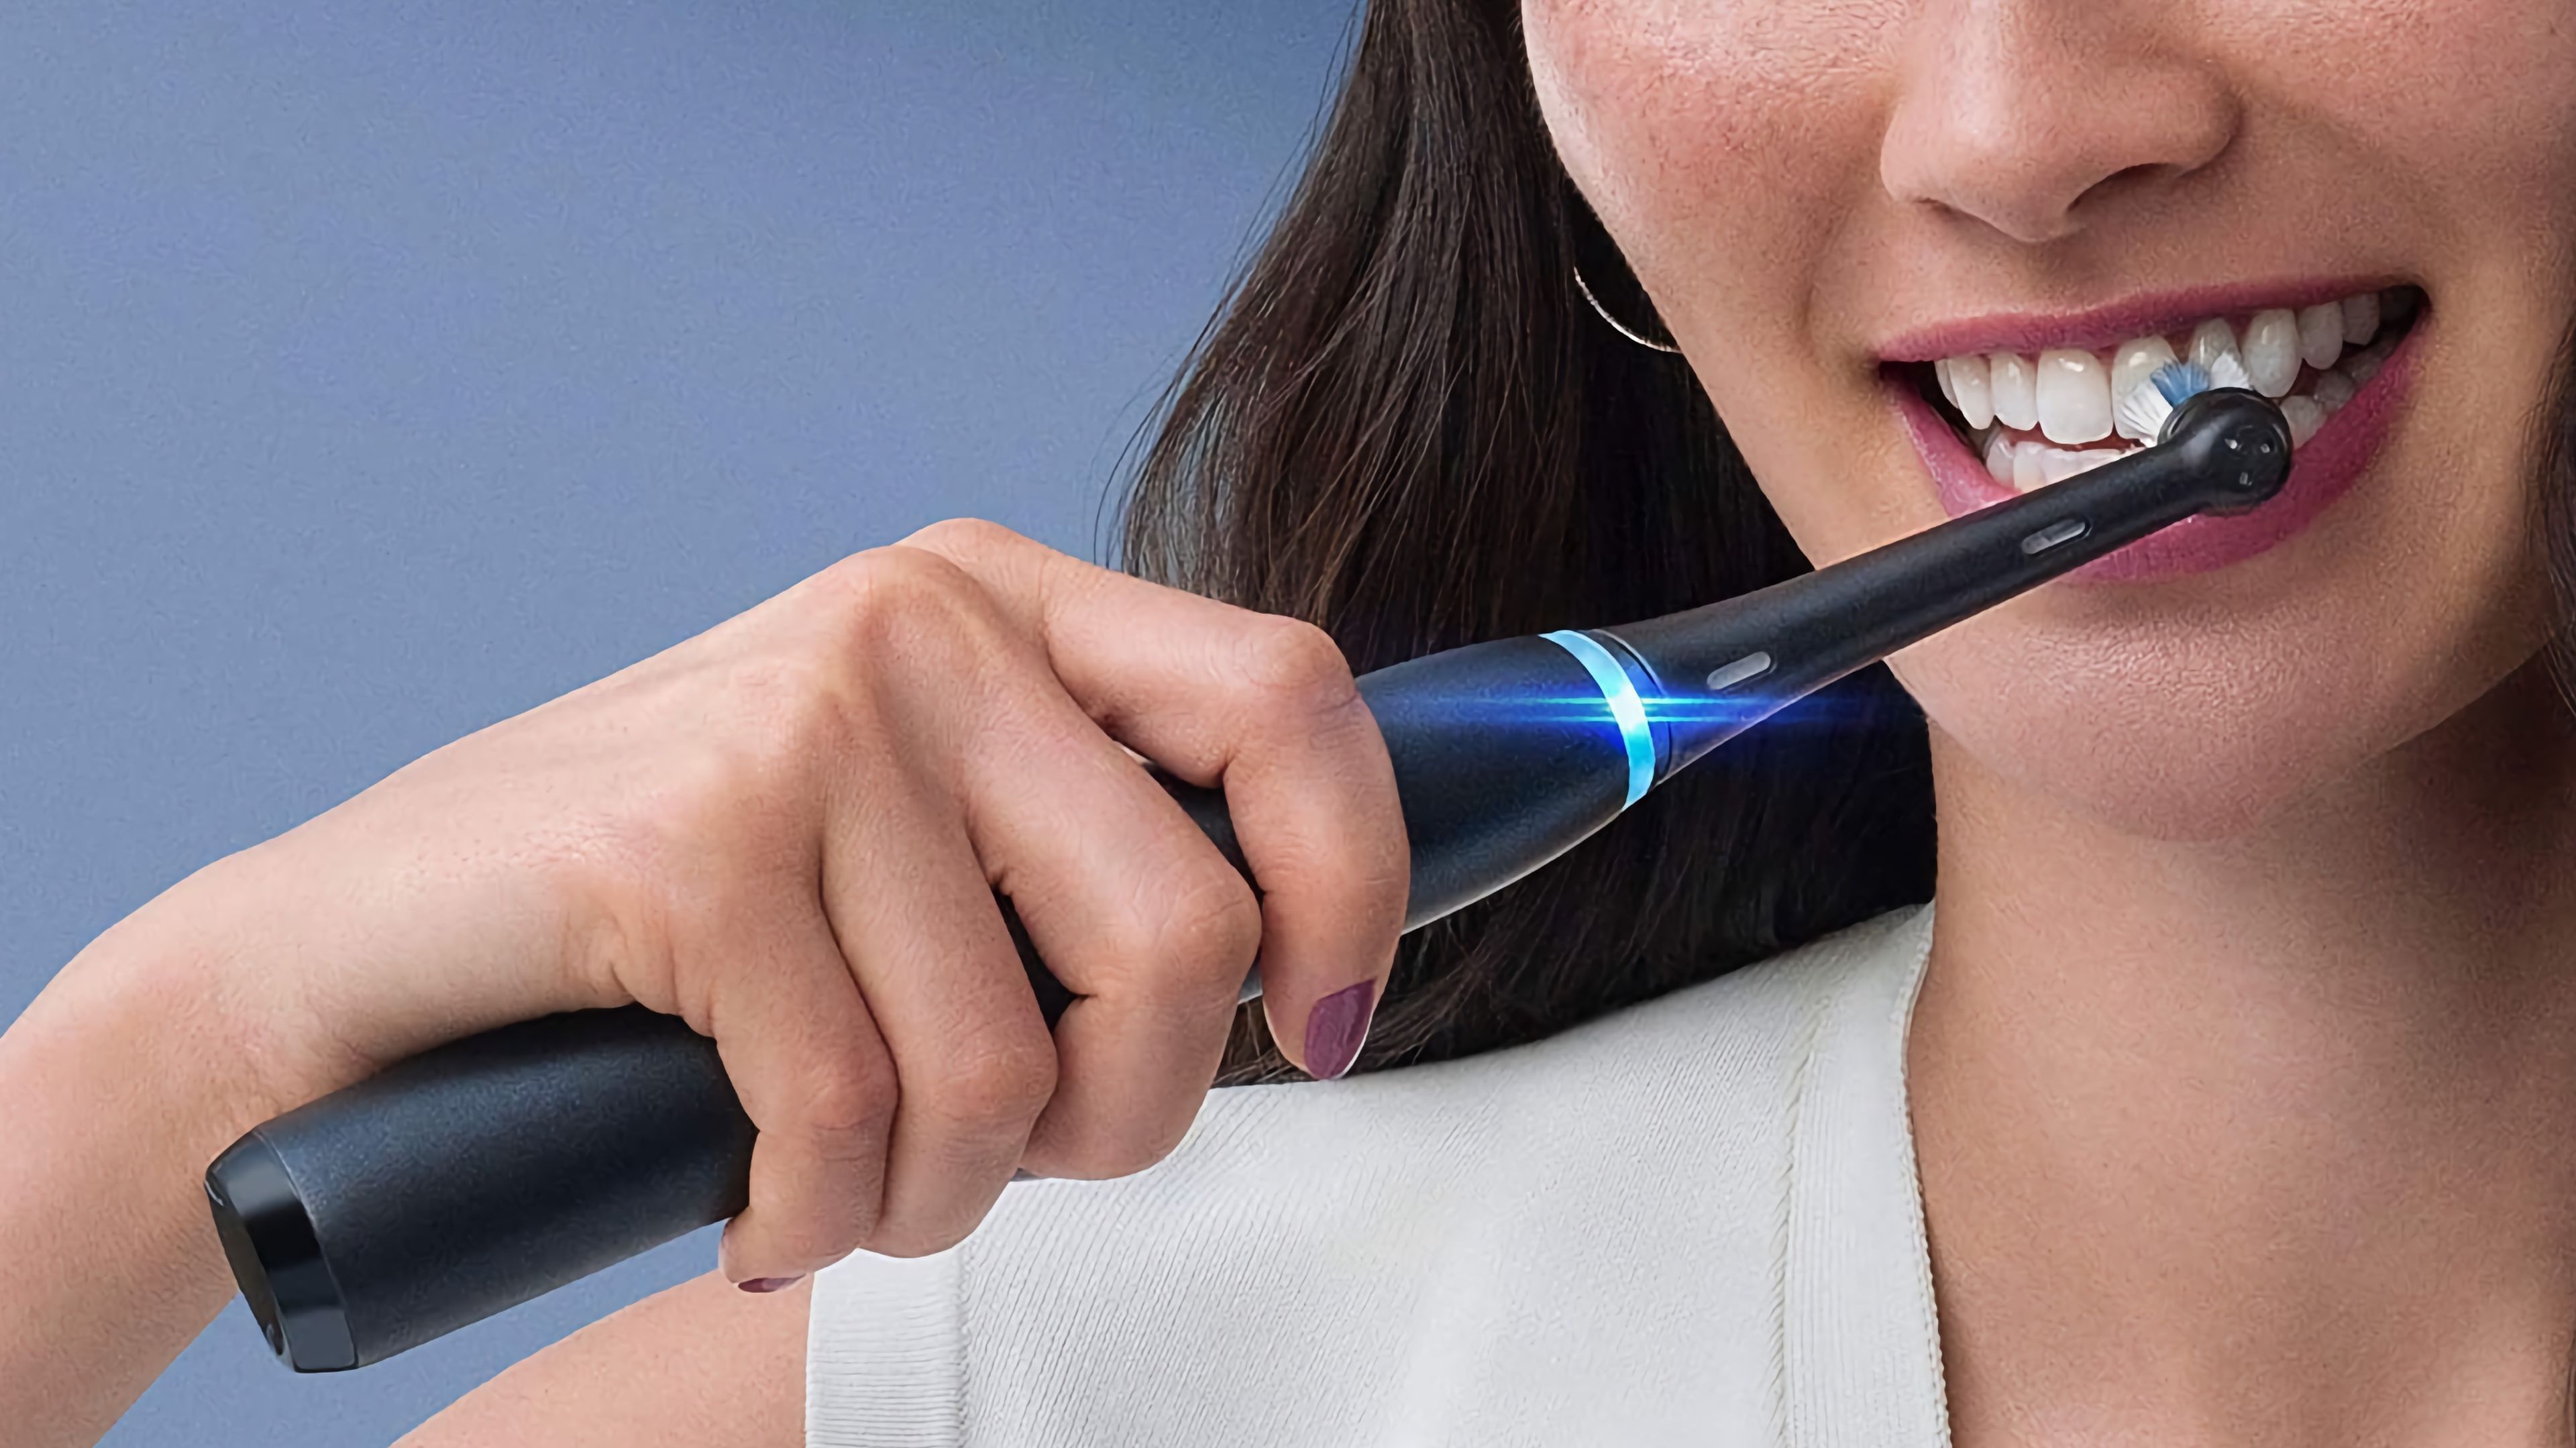 Cepillos eléctricos Oral-B: estos son los mejores modelos puedes comprar | Computer Hoy